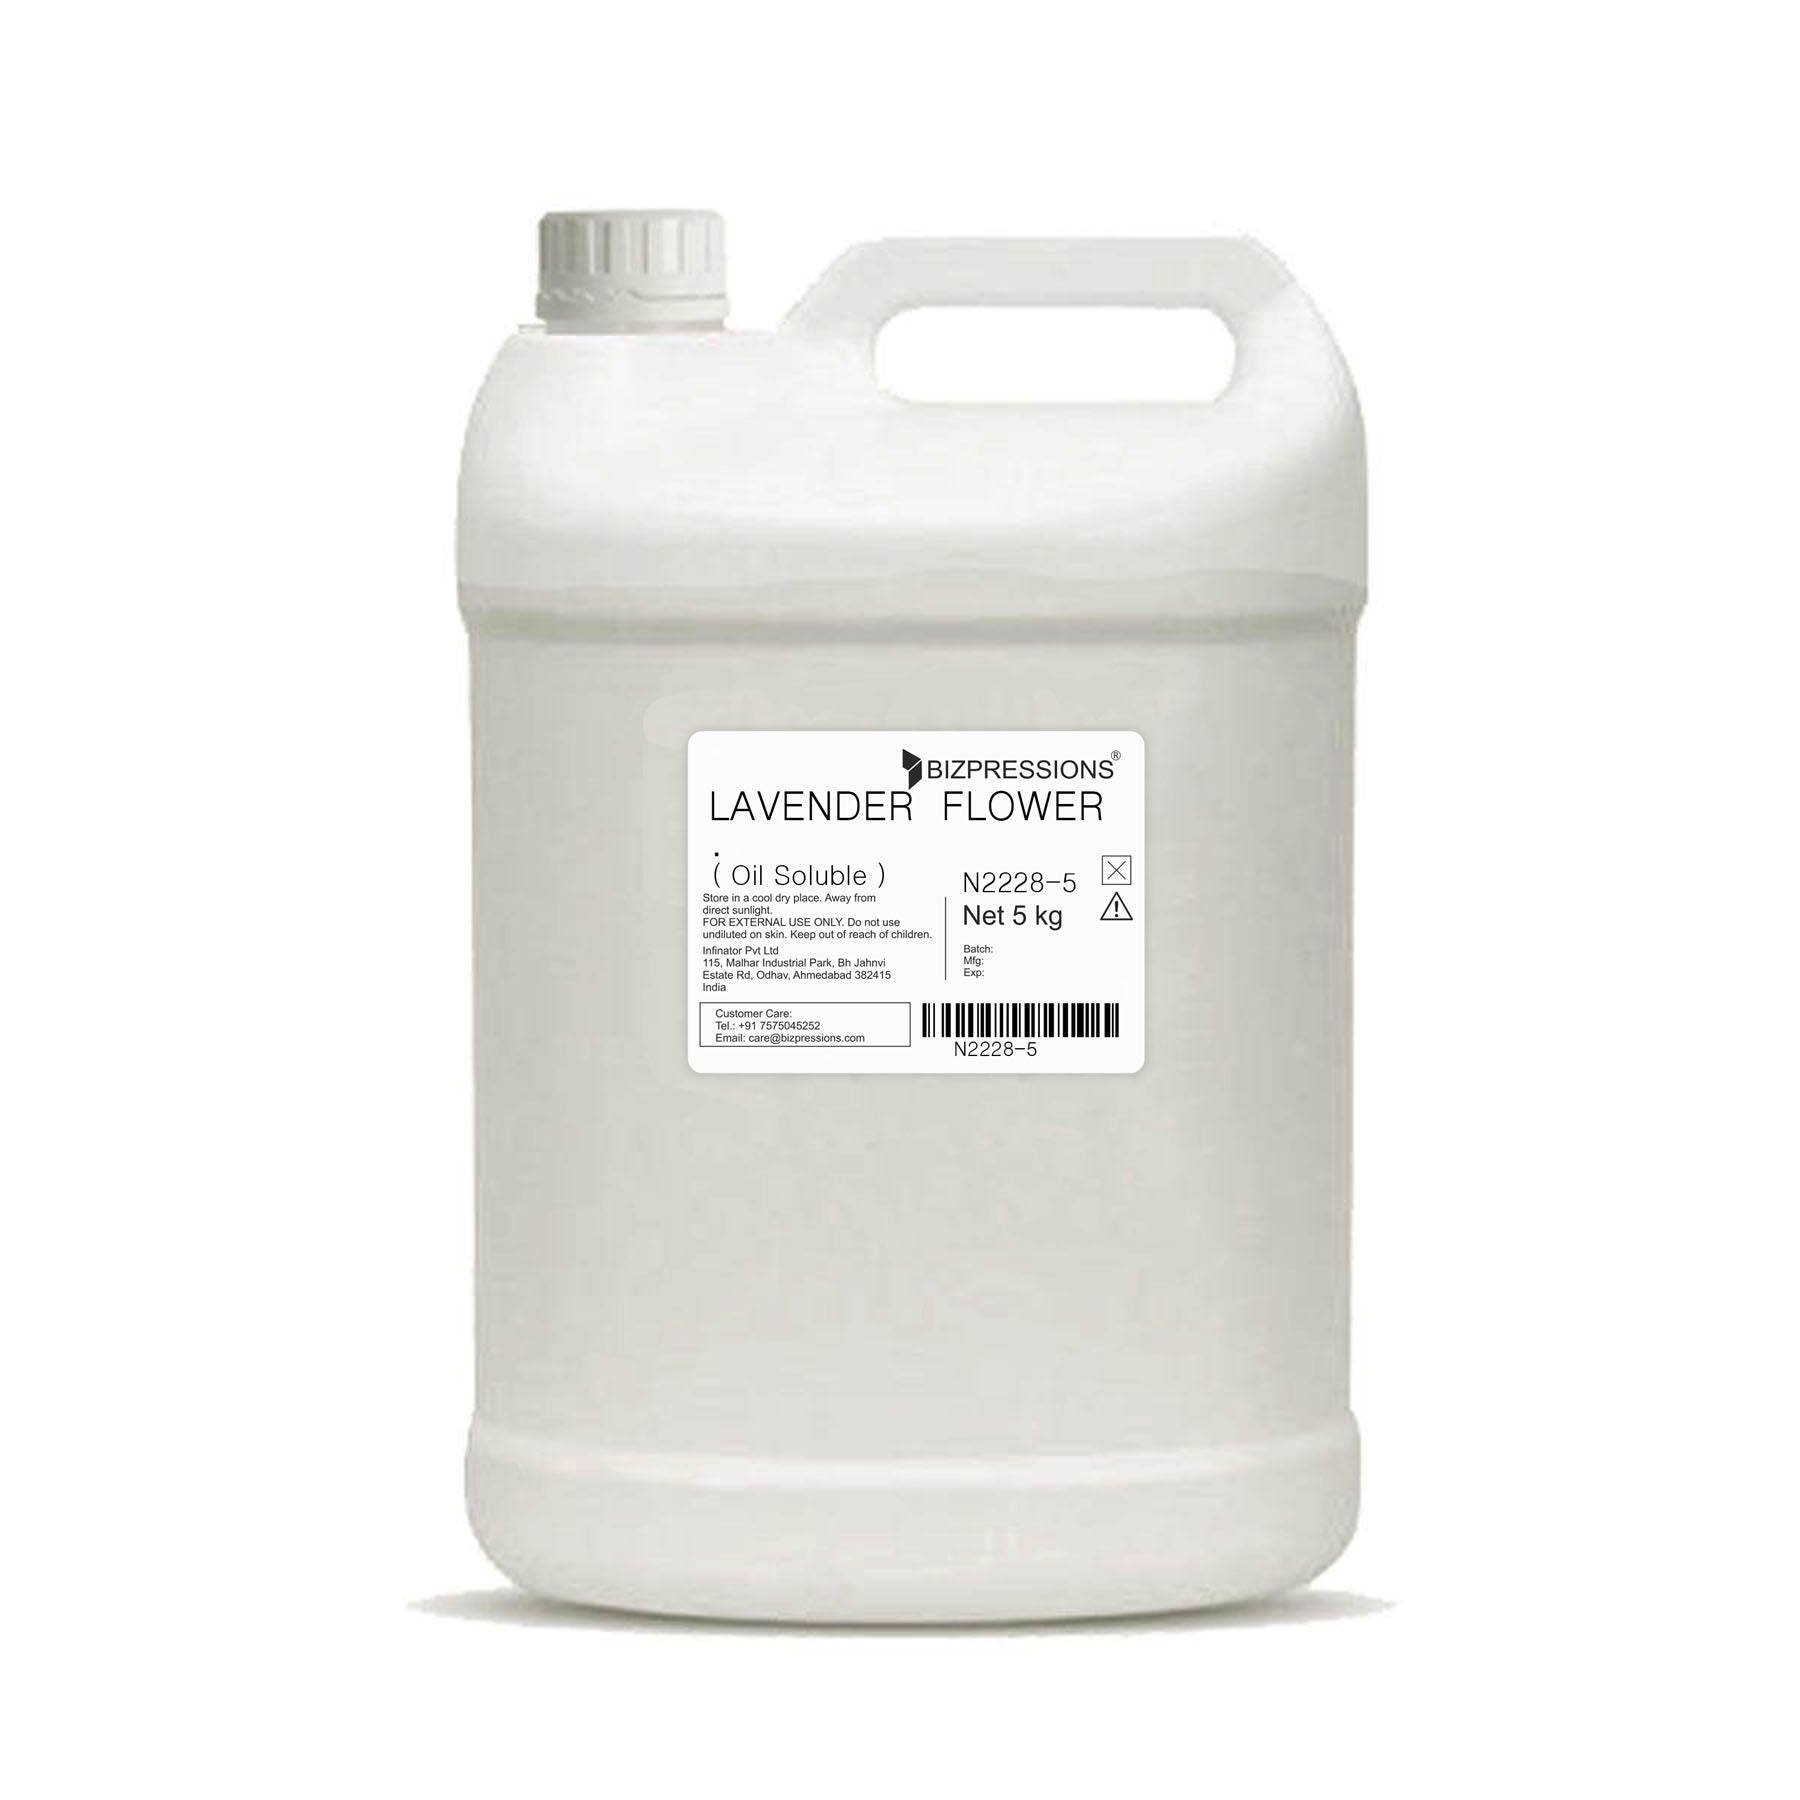 LAVENDER FLOWER - Fragrance ( Oil Soluble ) - 5 kg